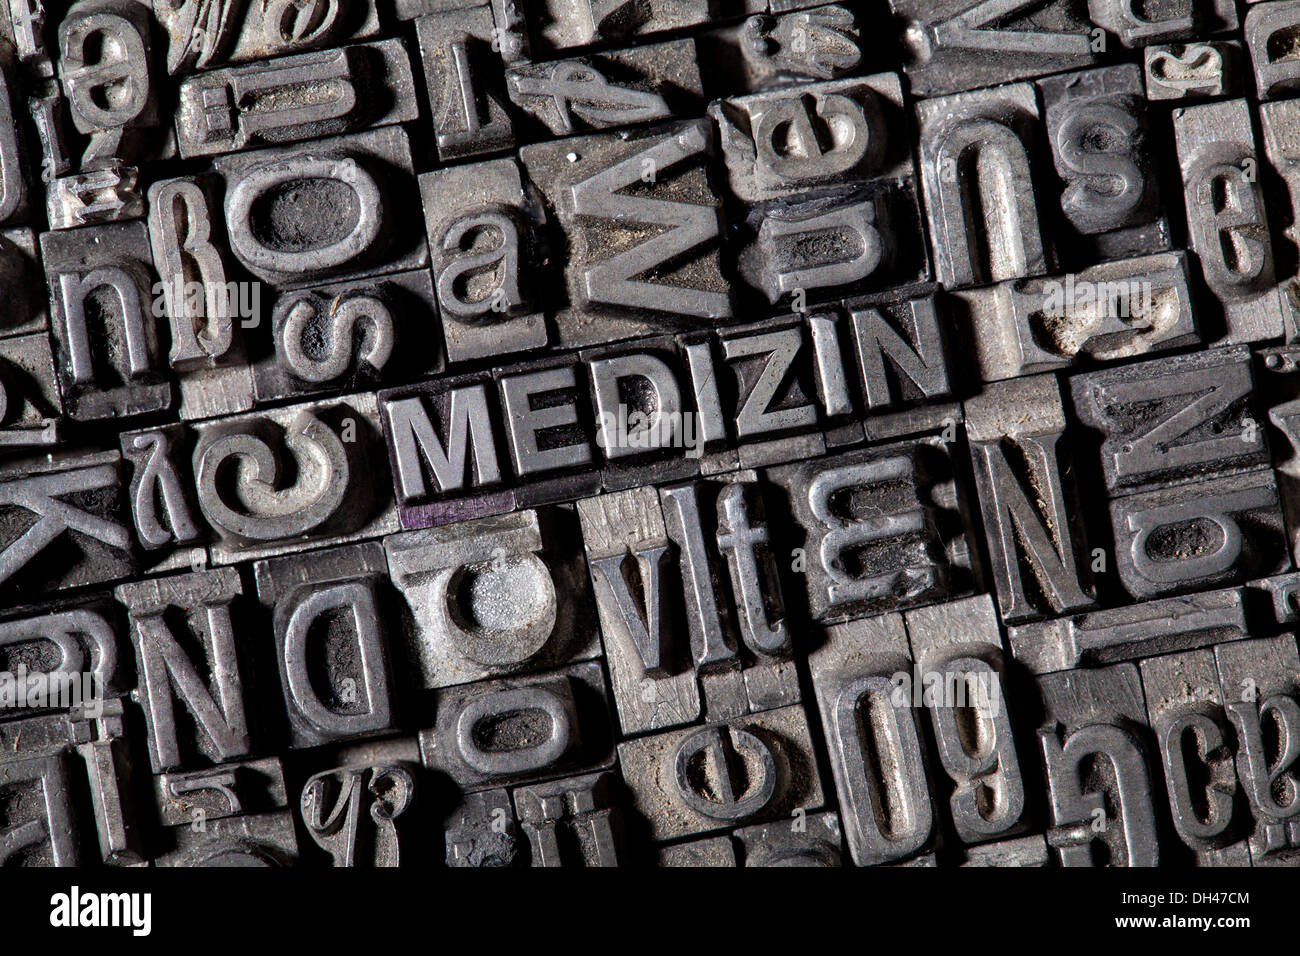 Antiguas letras de plomo que forman la palabra 'MEDIZIN', Alemán para 'medicine' Foto de stock